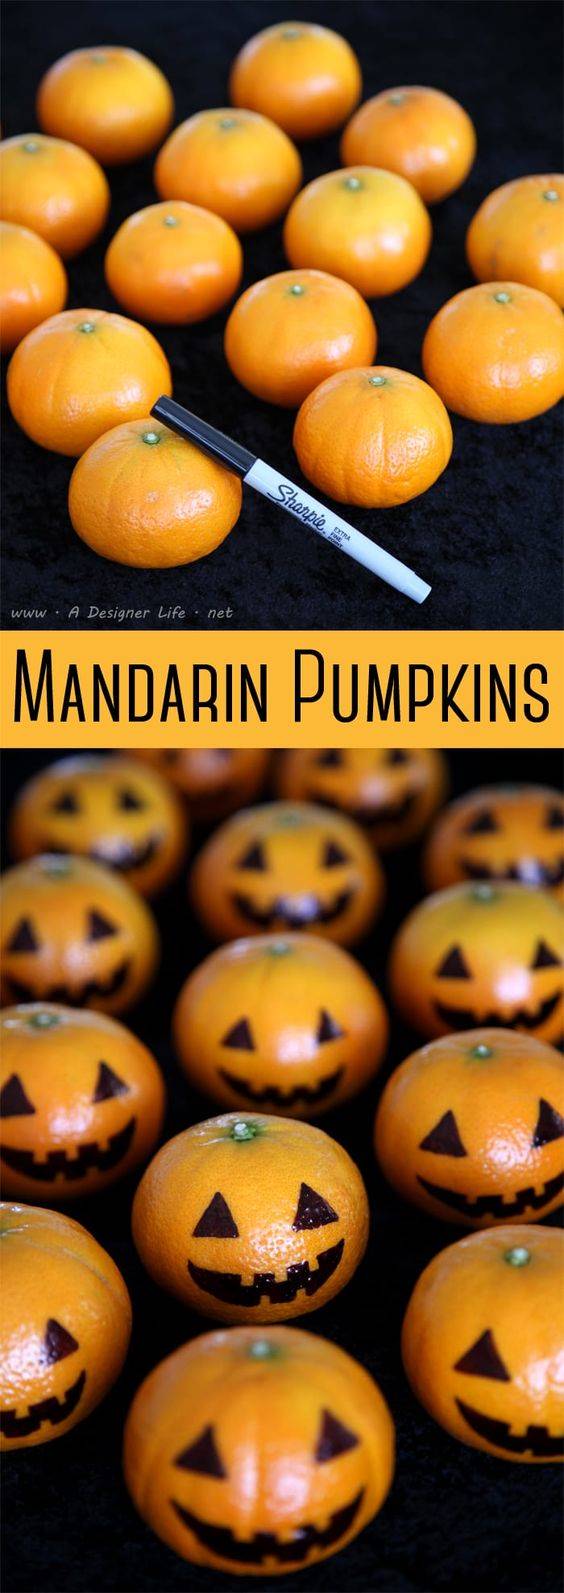 Mandarinas con decoración de Halloween.